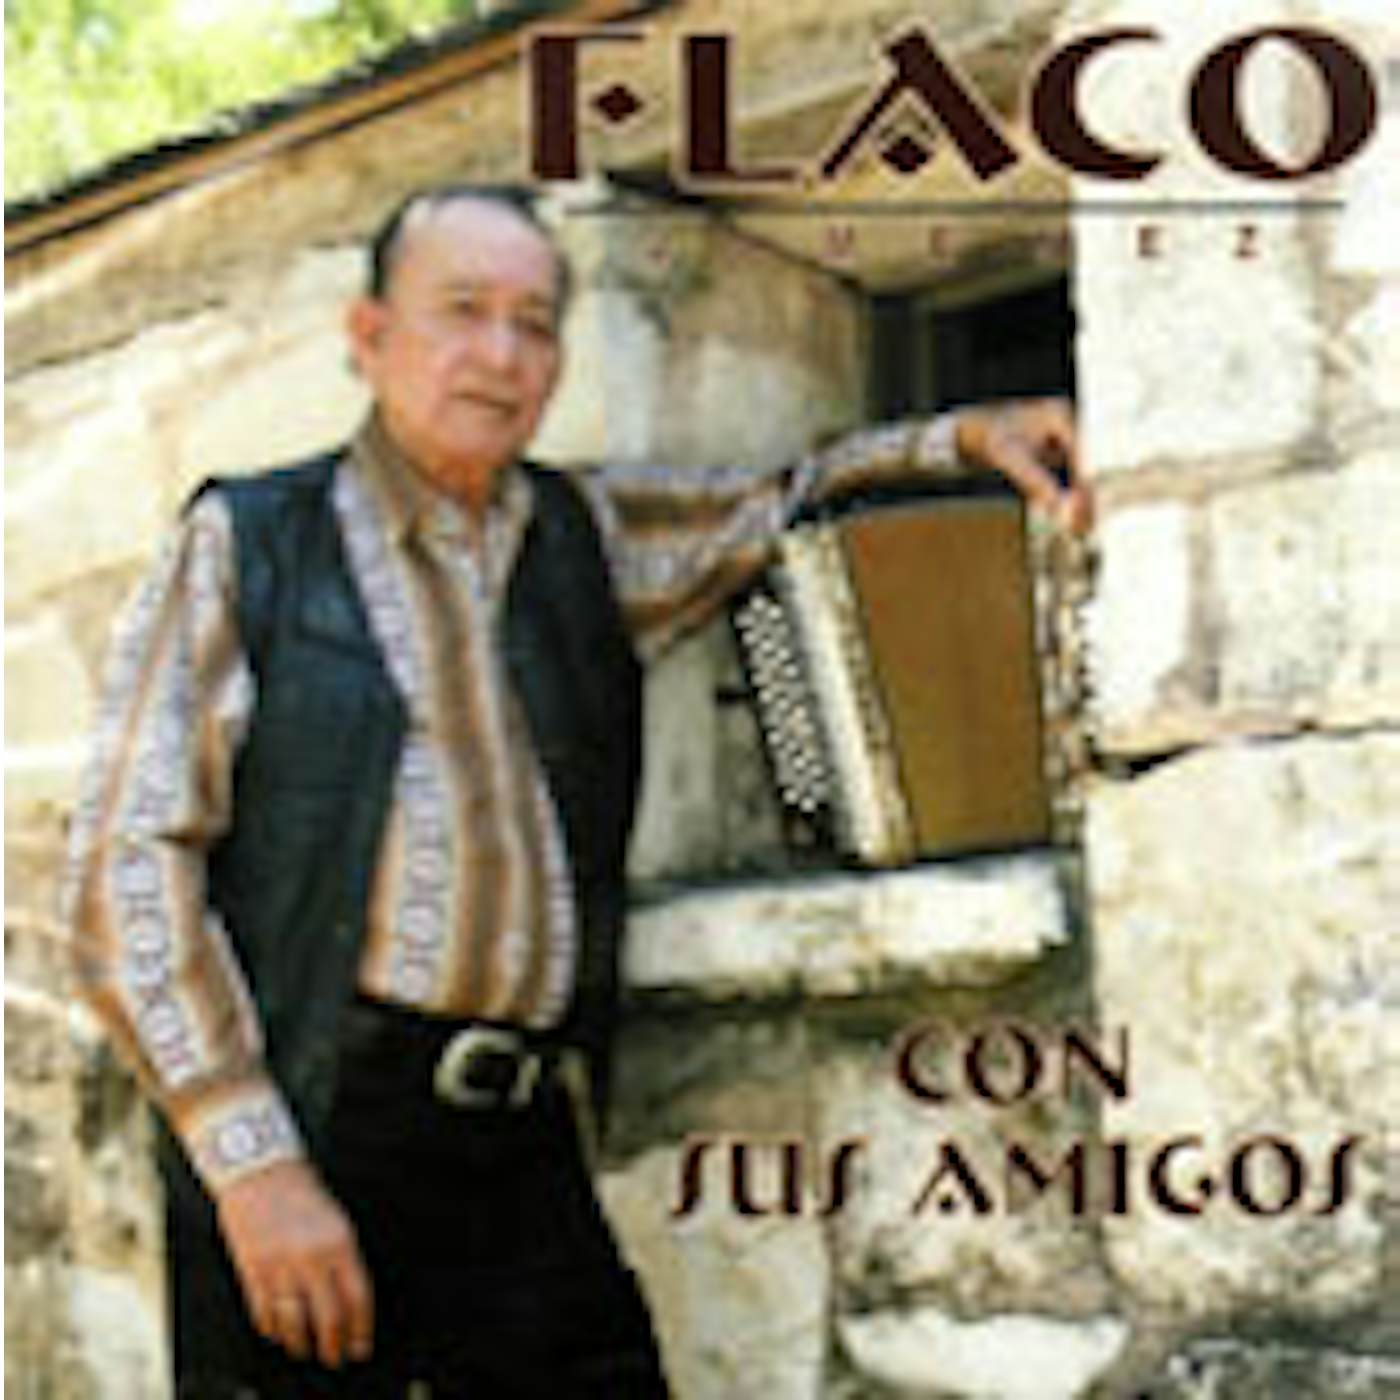 Flaco Jimenez CON SUS AMIGOS CD